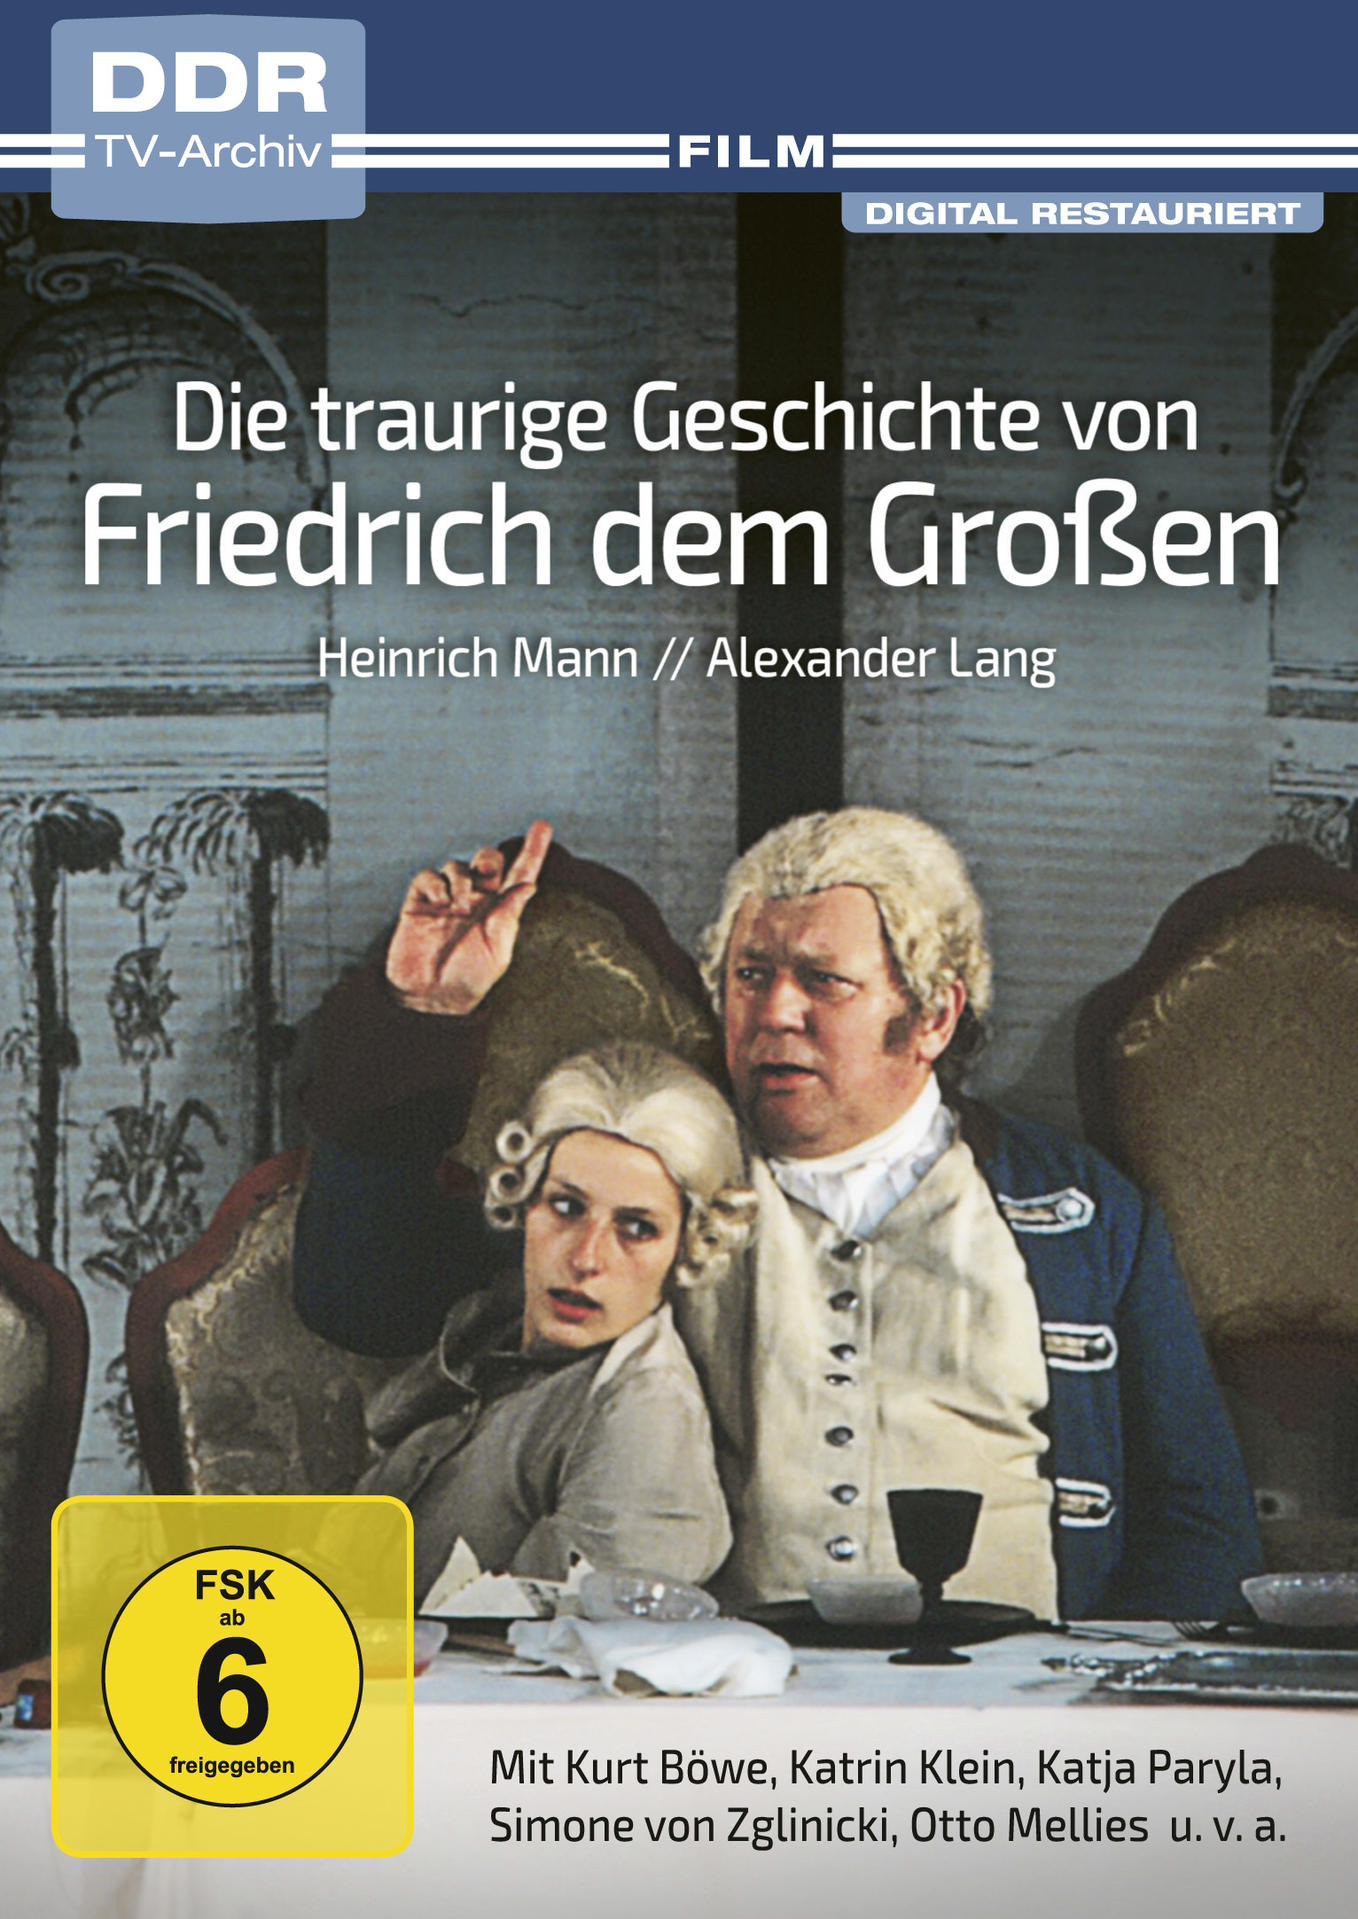 Die traurige Geschichte von Friedrich DVD (DDR dem TV-Archiv) Großen